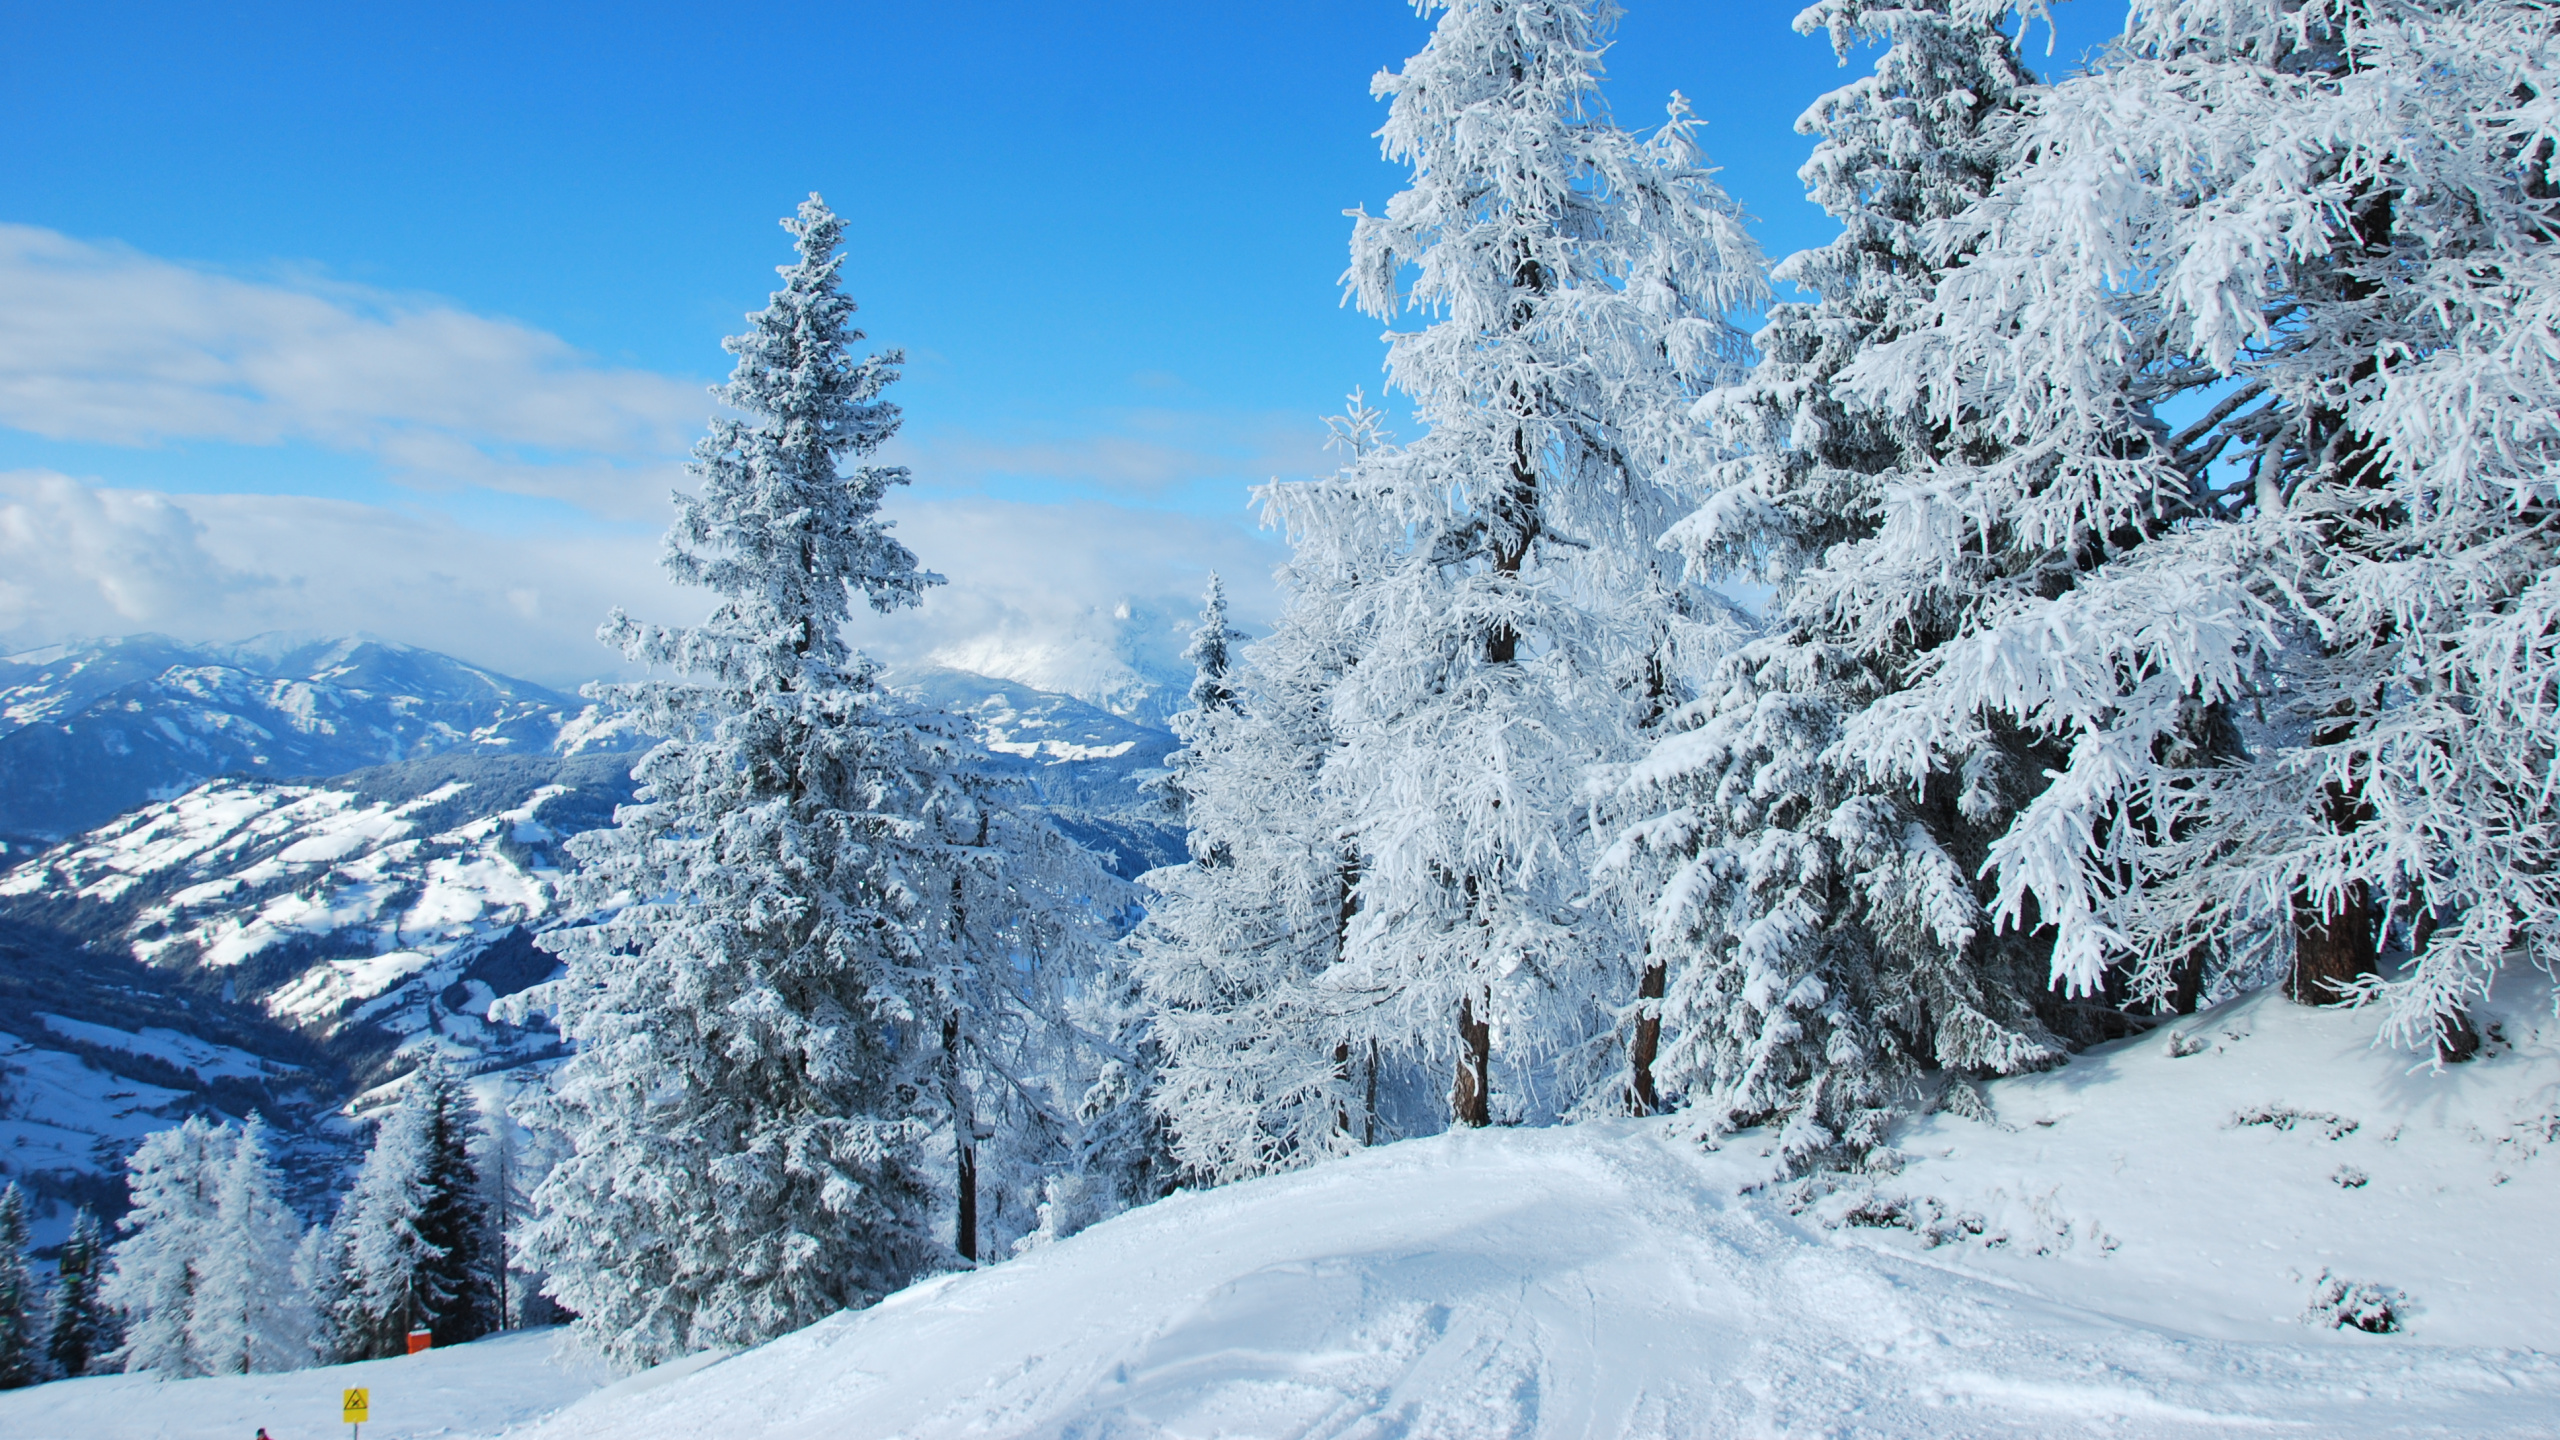 冬天, Fir, 木本植物, 滑雪胜地, 山脉 壁纸 2560x1440 允许